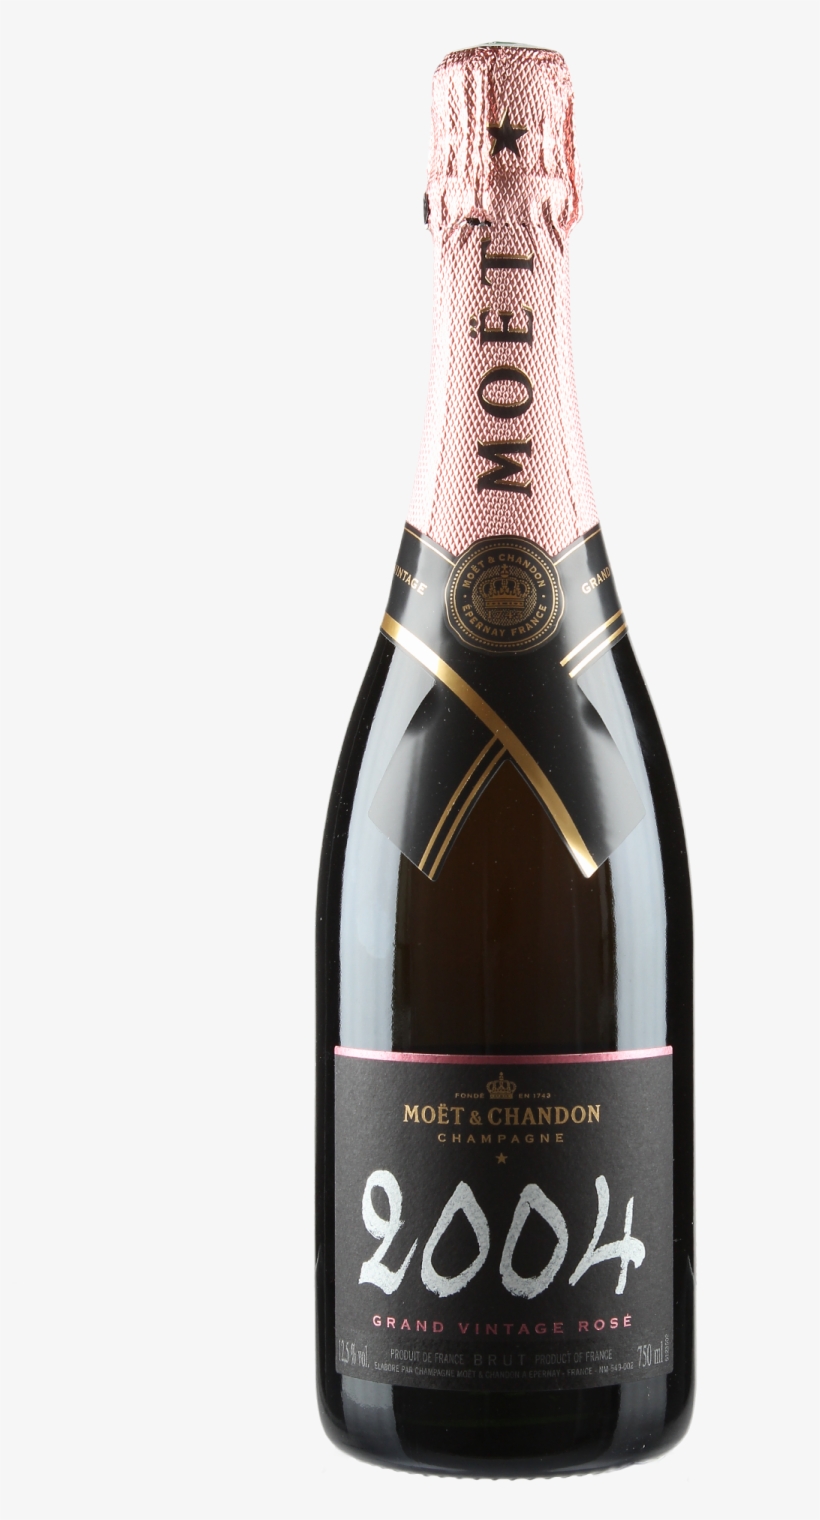 2008 Champagne Brut Grand Vintage Rosé - Moet 2004 Grand Vintage Price, transparent png #8753427